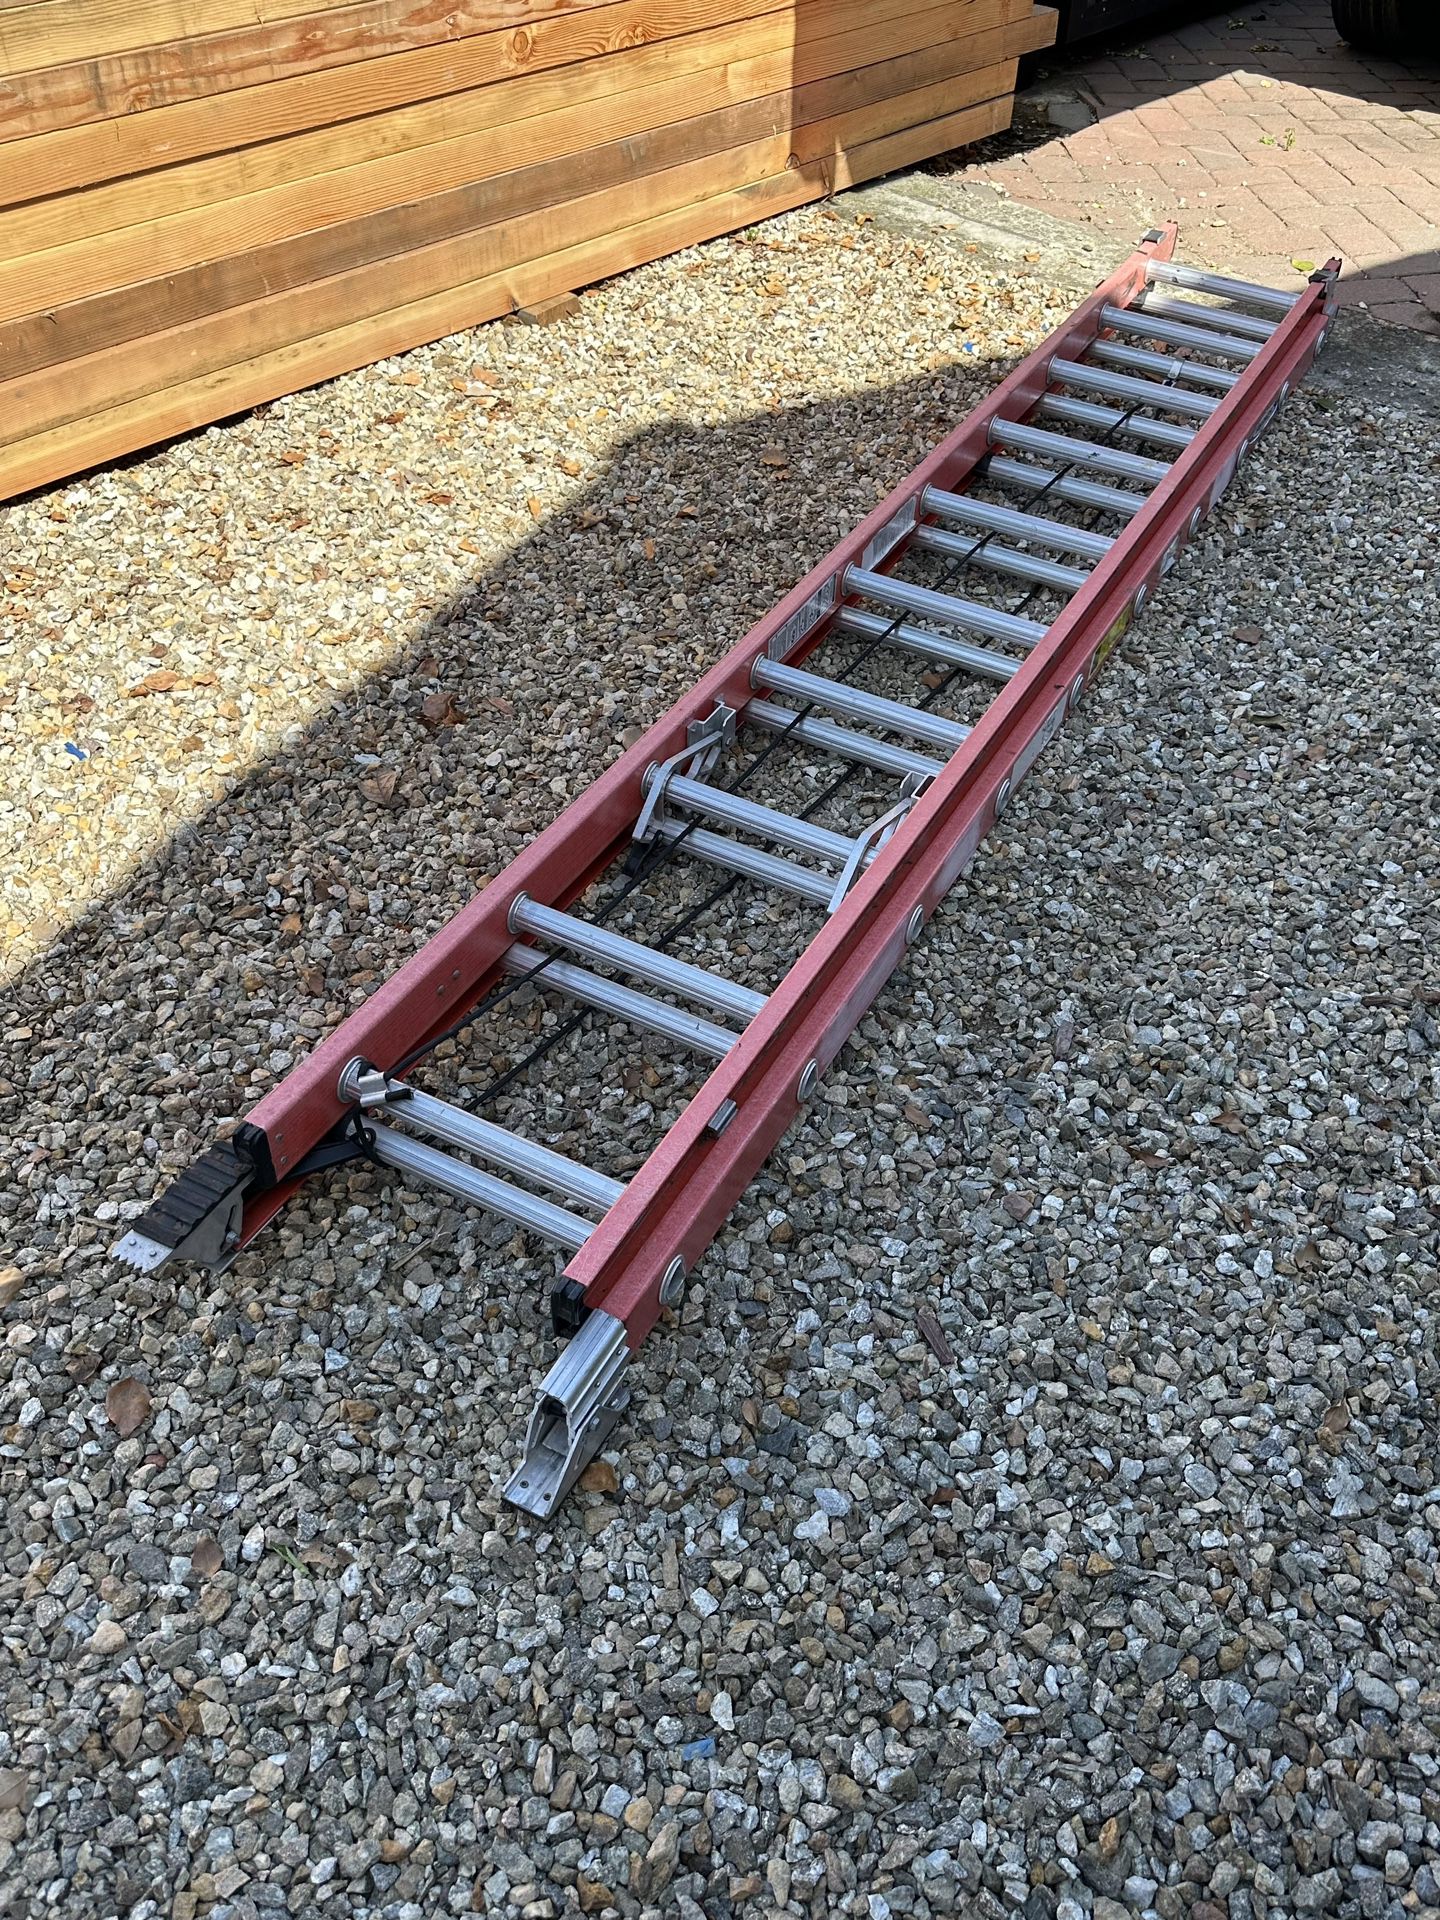 20’ Werner Extension Ladder